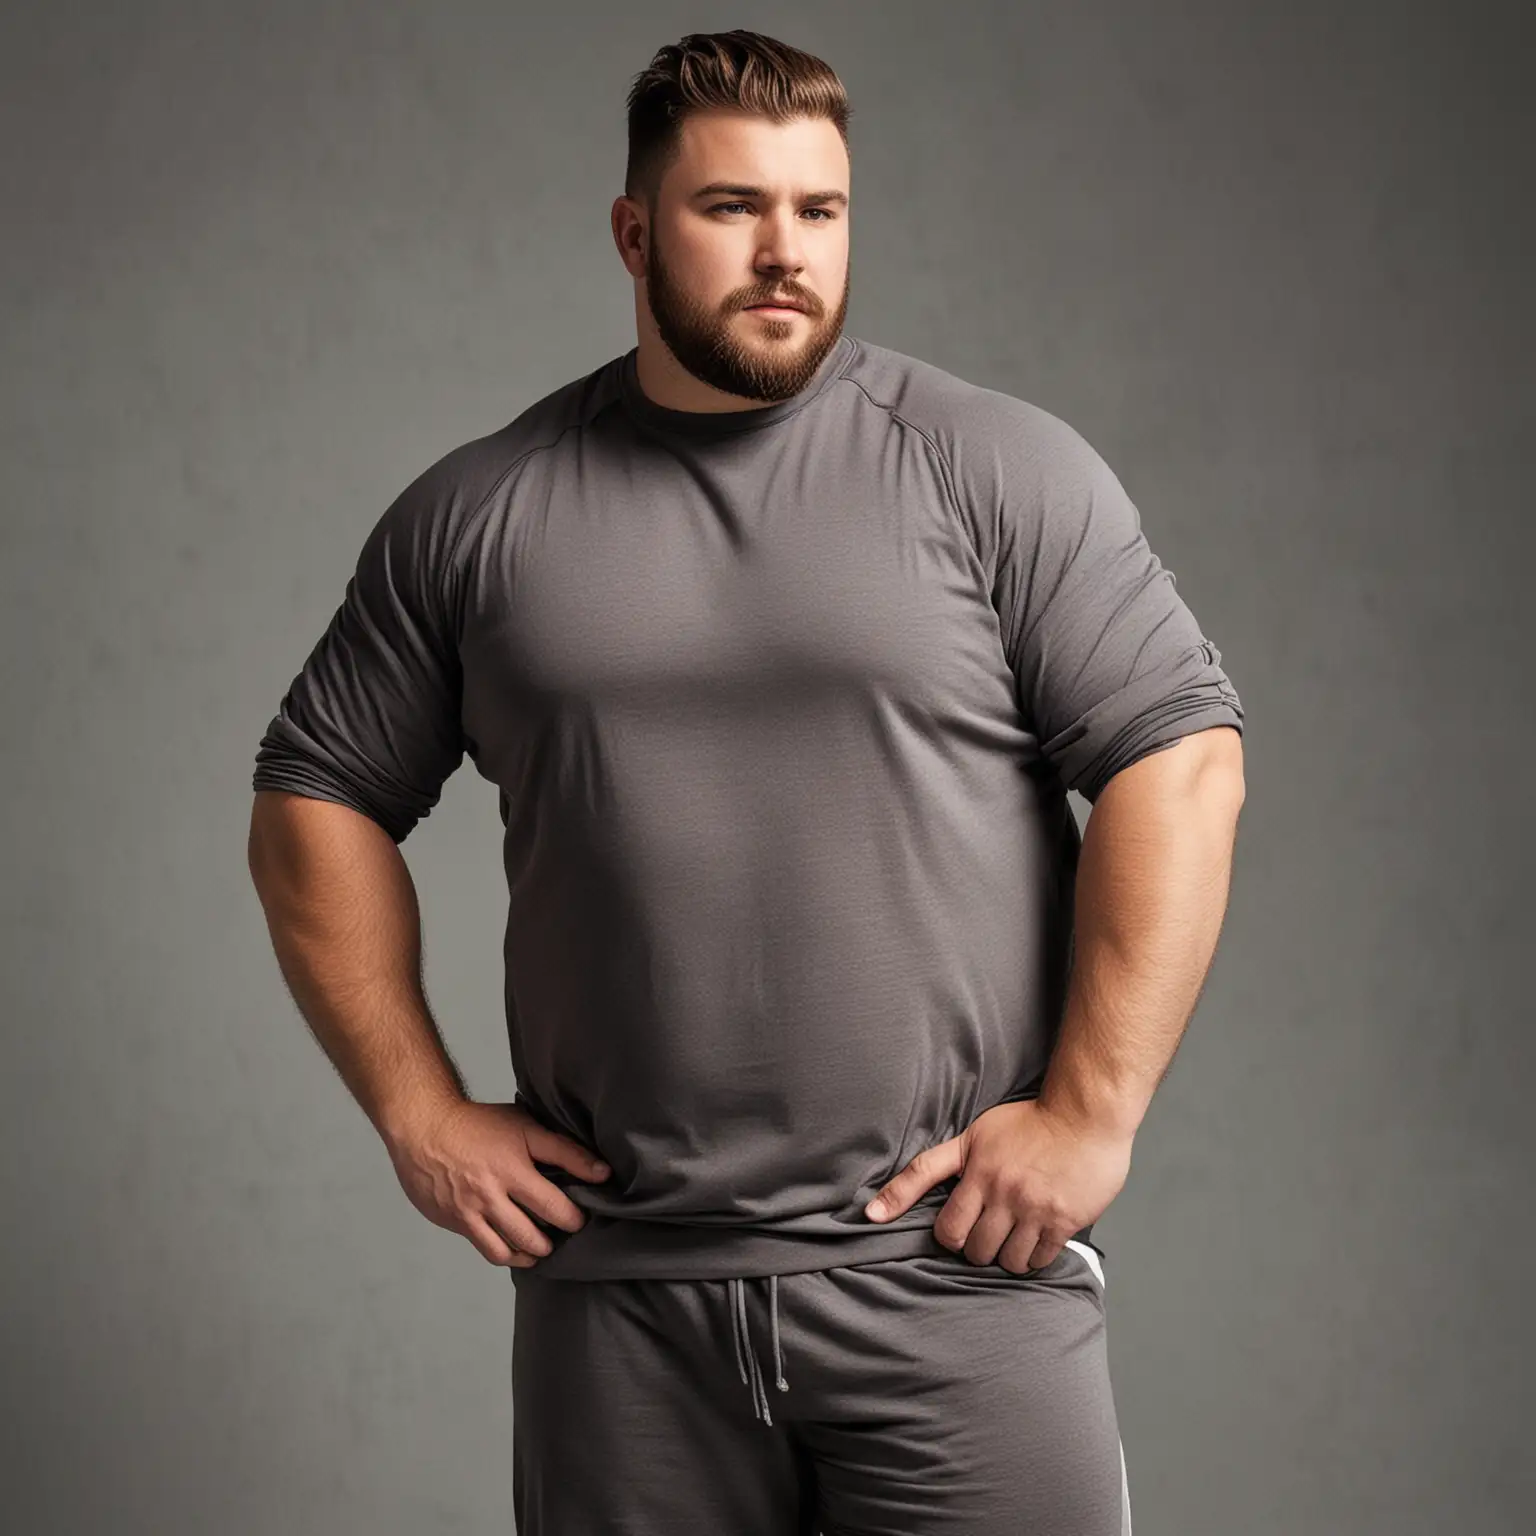 Plus-Size-Athletic-Wear-Strong-Man-in-Sportswear